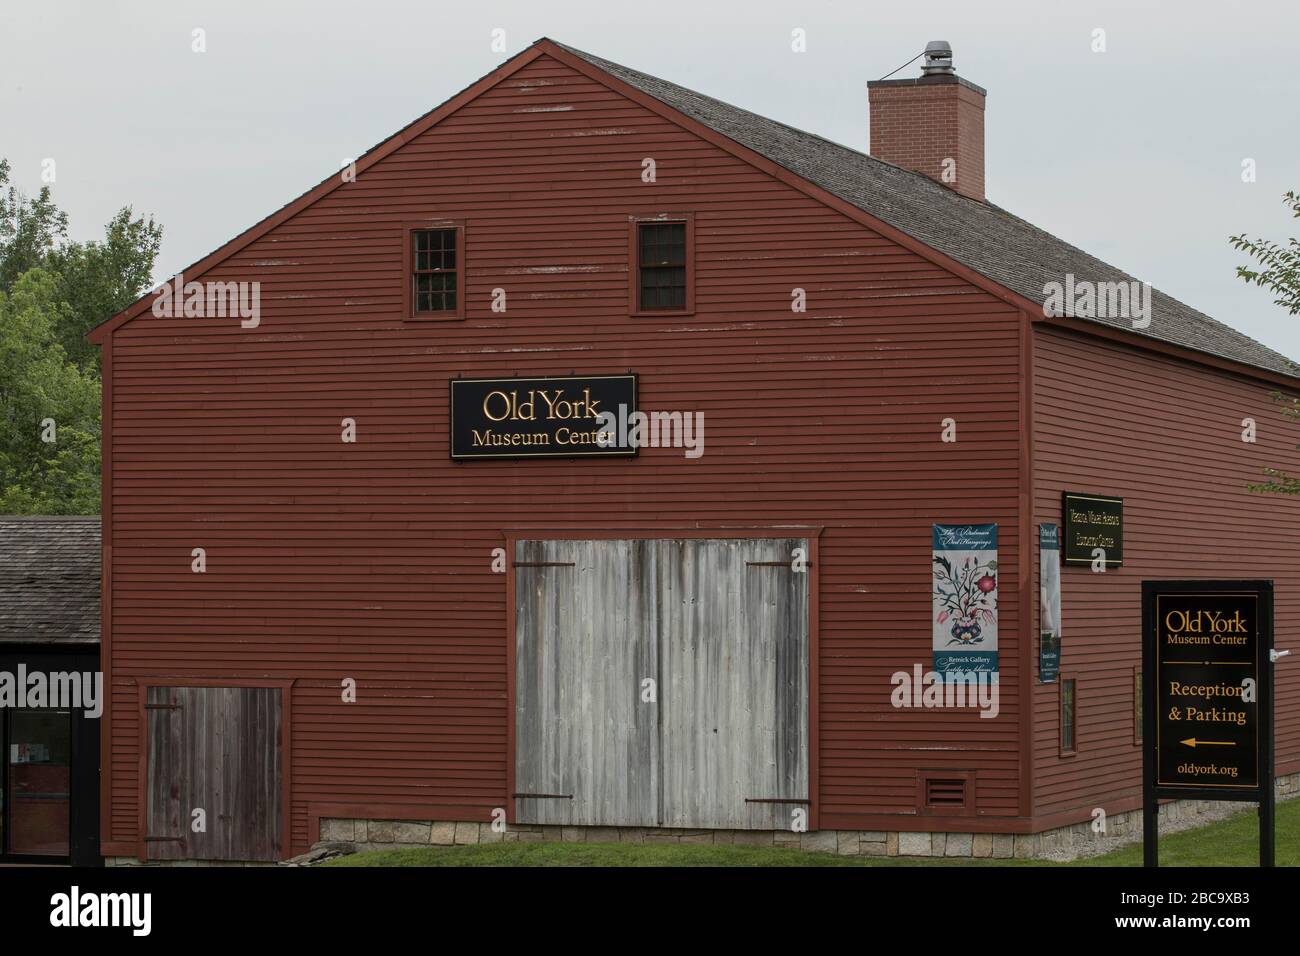 Ils accueillent ici des événements et des programmes publics. Ce bâtiment aide à soutenir les lieux historiques de la région dans le Maine de Old York Village. Banque D'Images